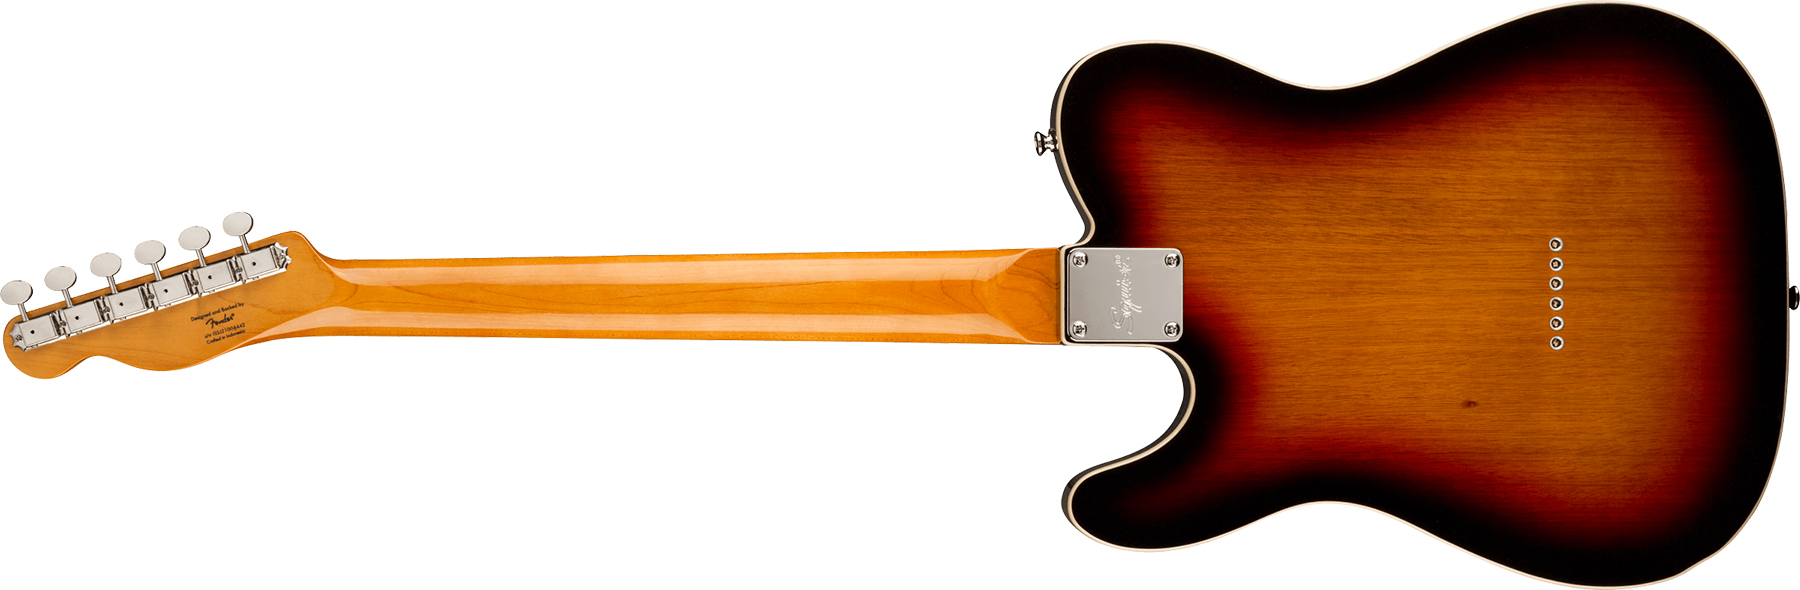 Squier Esquire Tele '60s Custom Classic Vibe Fsr Ltd Lau - 3 Color Sunburst - Guitarra eléctrica con forma de tel - Variation 1